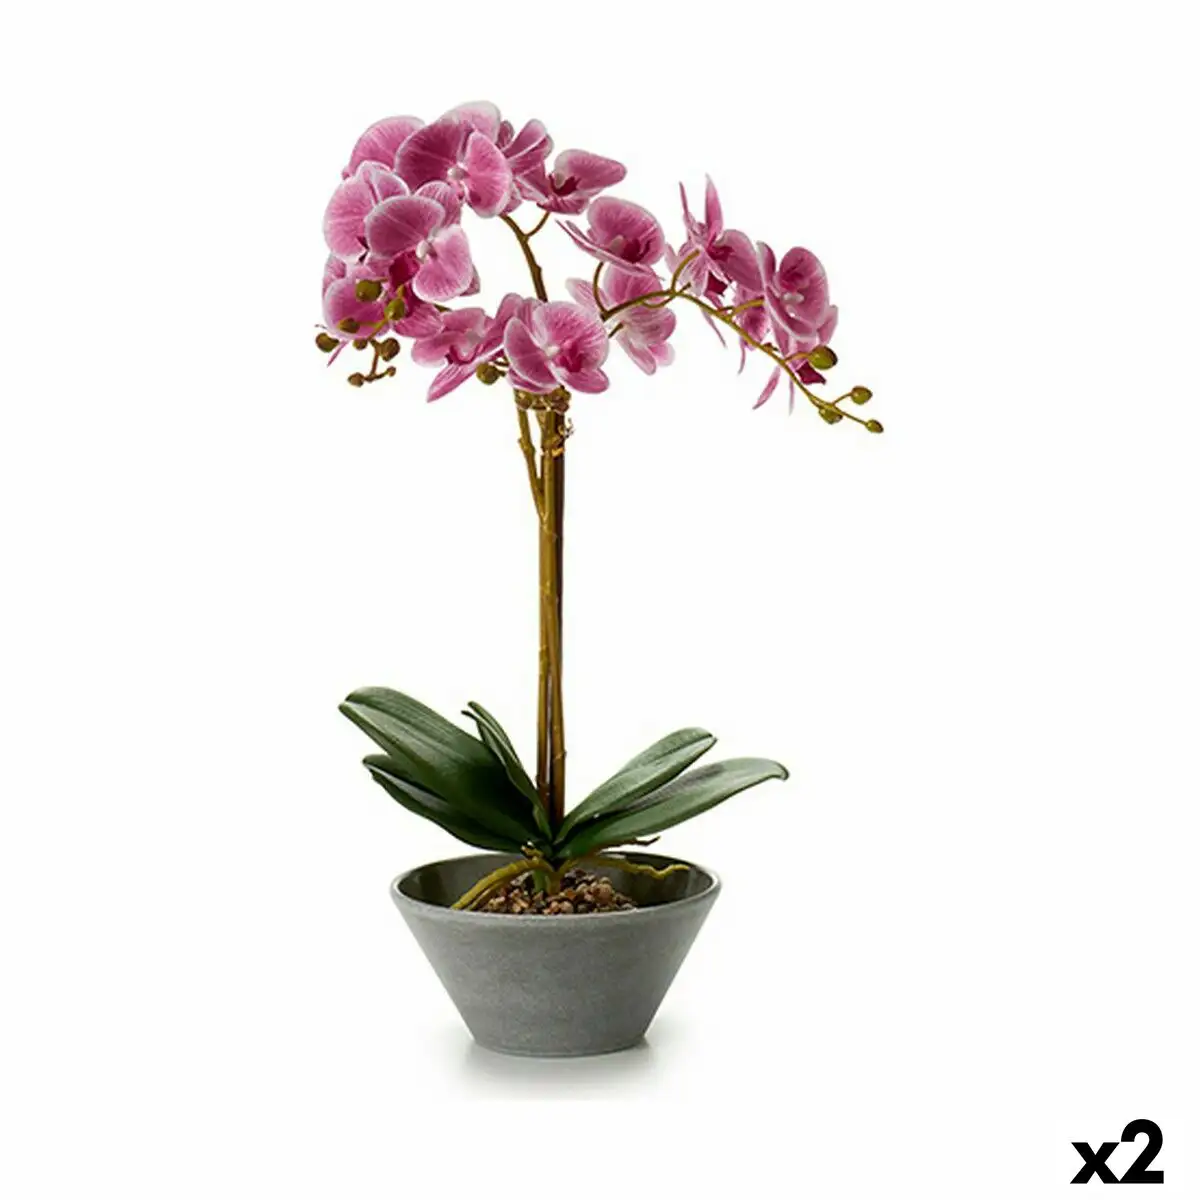 Plante decorative orchidee 20 x 60 x 28 cm 2 unites _5924. DIAYTAR SENEGAL - Votre Passage vers l'Éclat et la Beauté. Explorez notre boutique en ligne et trouvez des produits qui subliment votre apparence et votre espace.